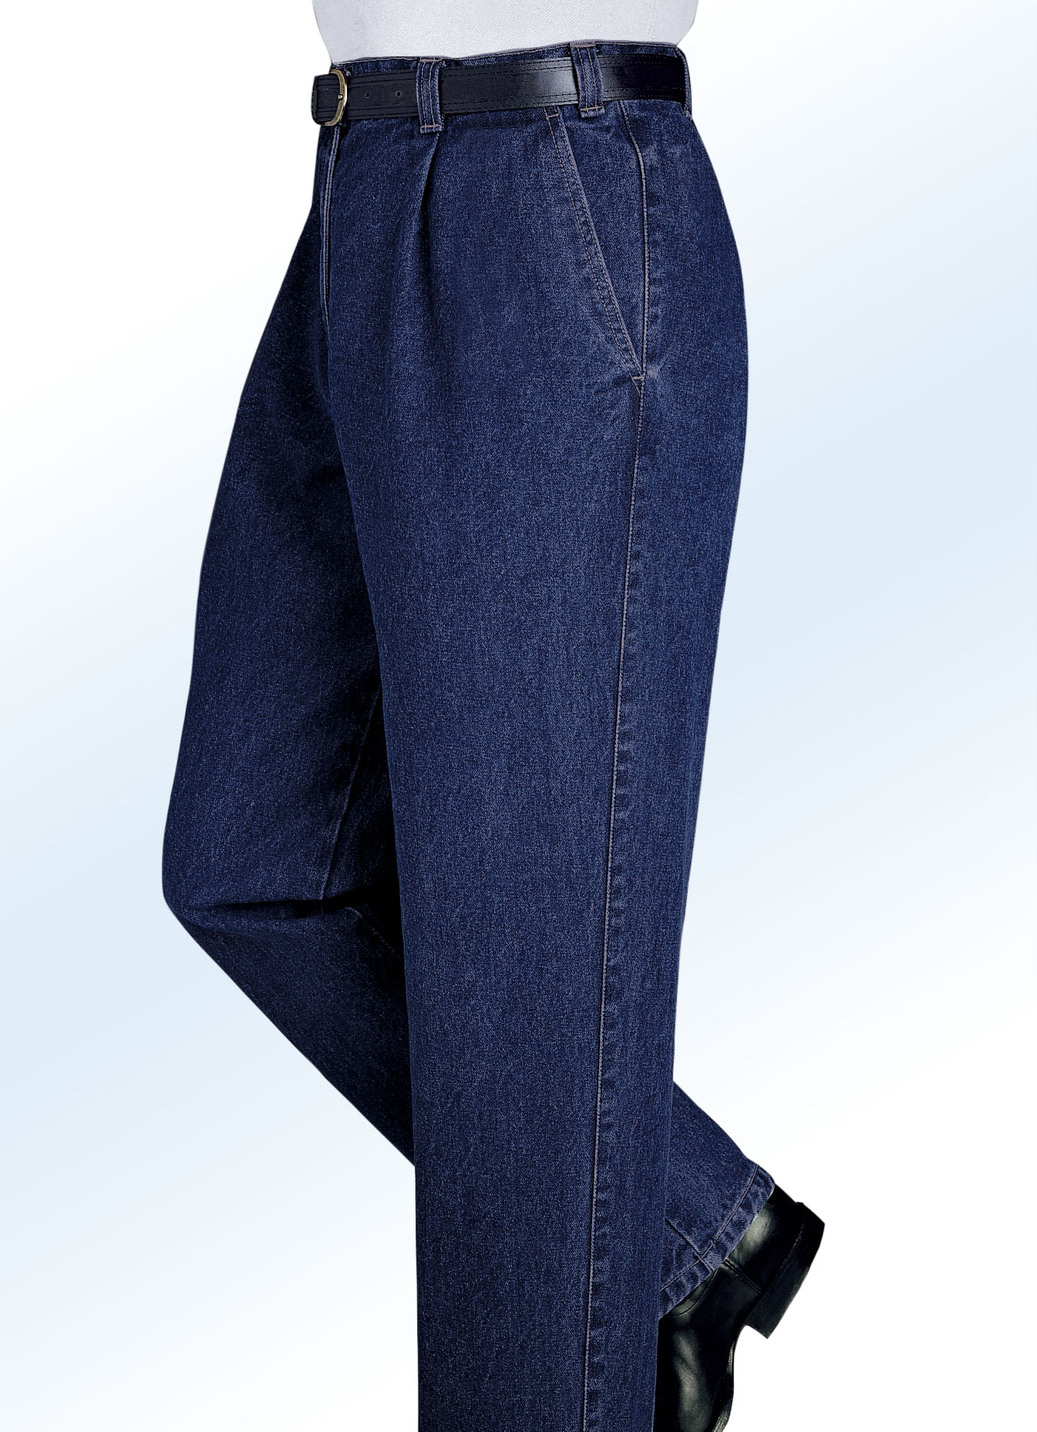 "Francesco Botti"-Jeans in 2 Qualitäten und 3 Farben, Qualität 1.Qualität, Dunkeljeans, Größe 28 von FRANCESCO BOTTI